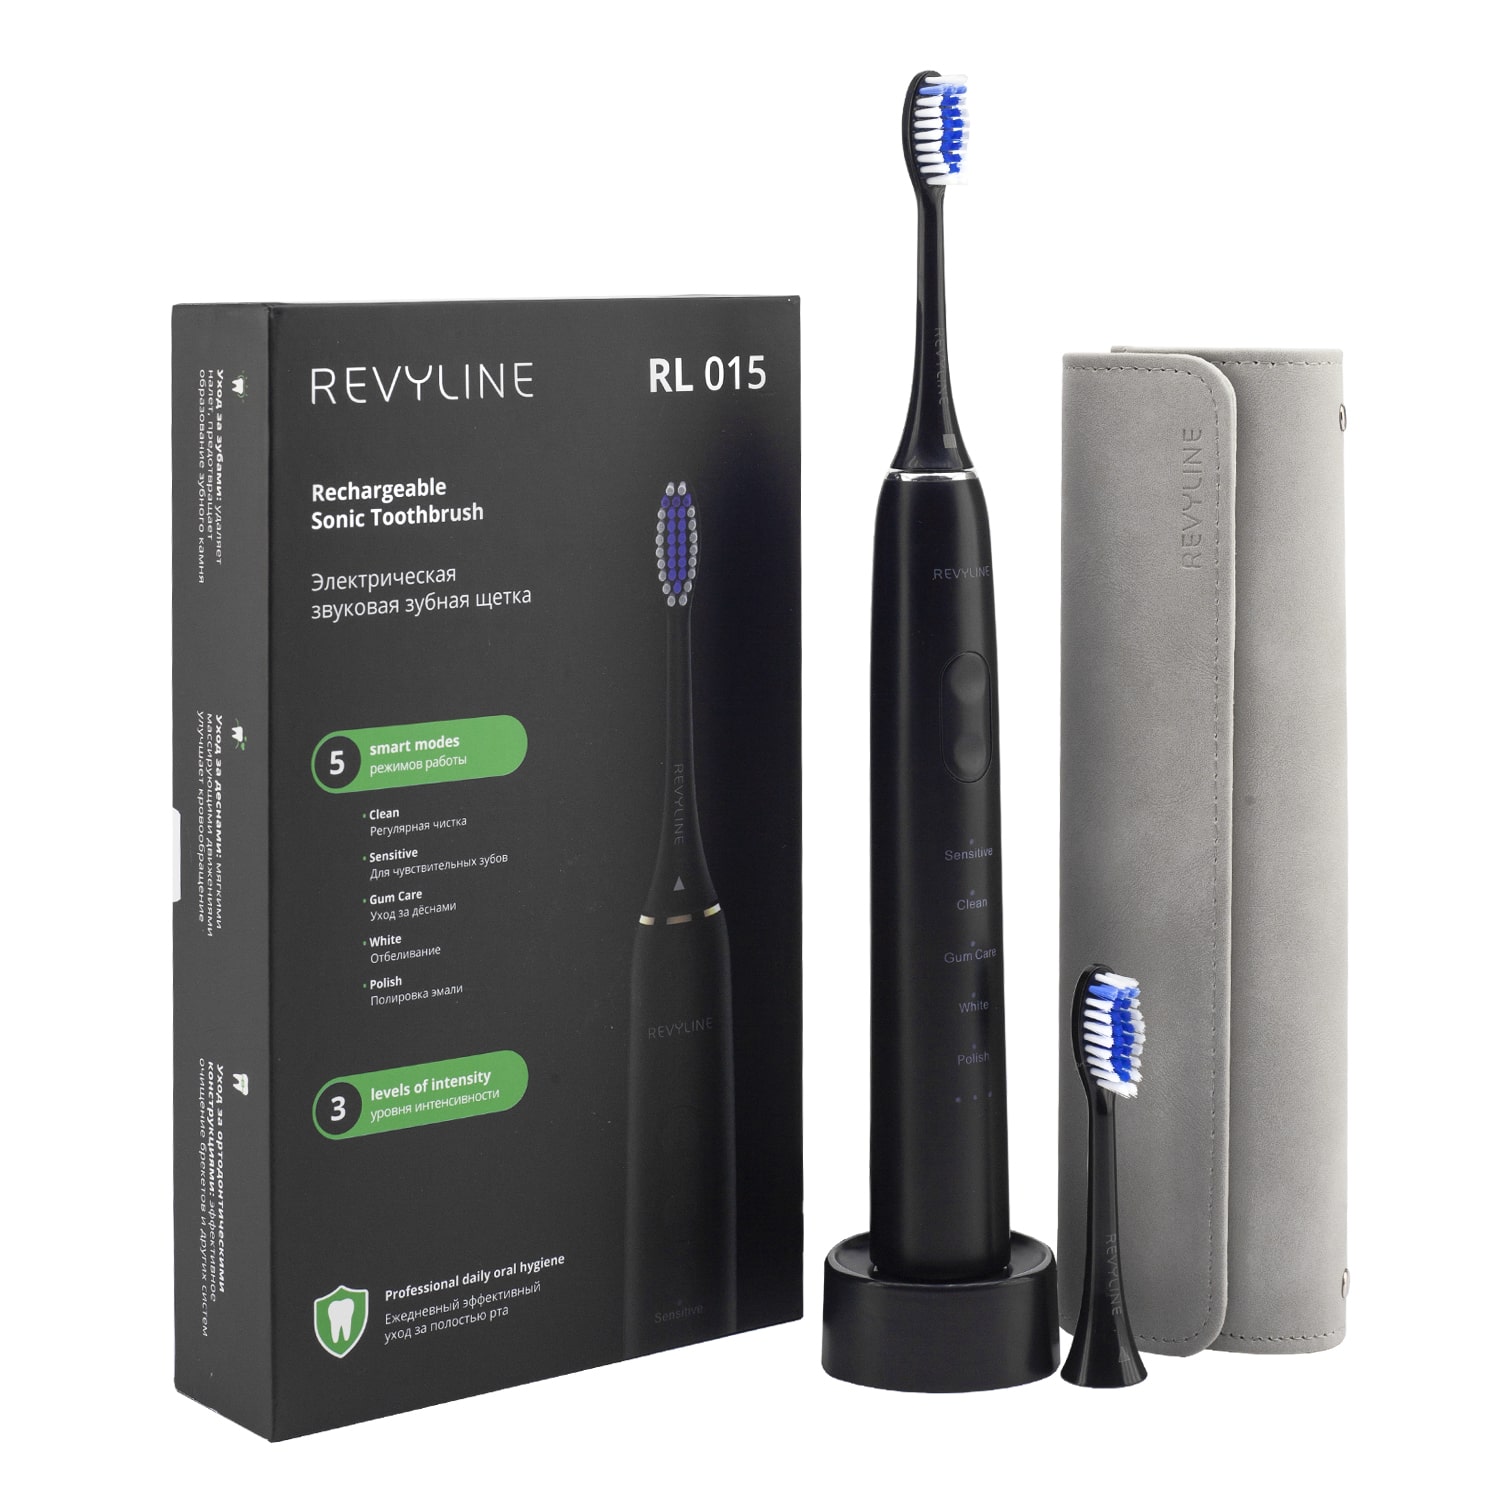 REVYLINE Электрическая звуковая зубная щетка RL 015, черная, 1 шт (REVYLINE, Электрические зубные щетки) цена и фото